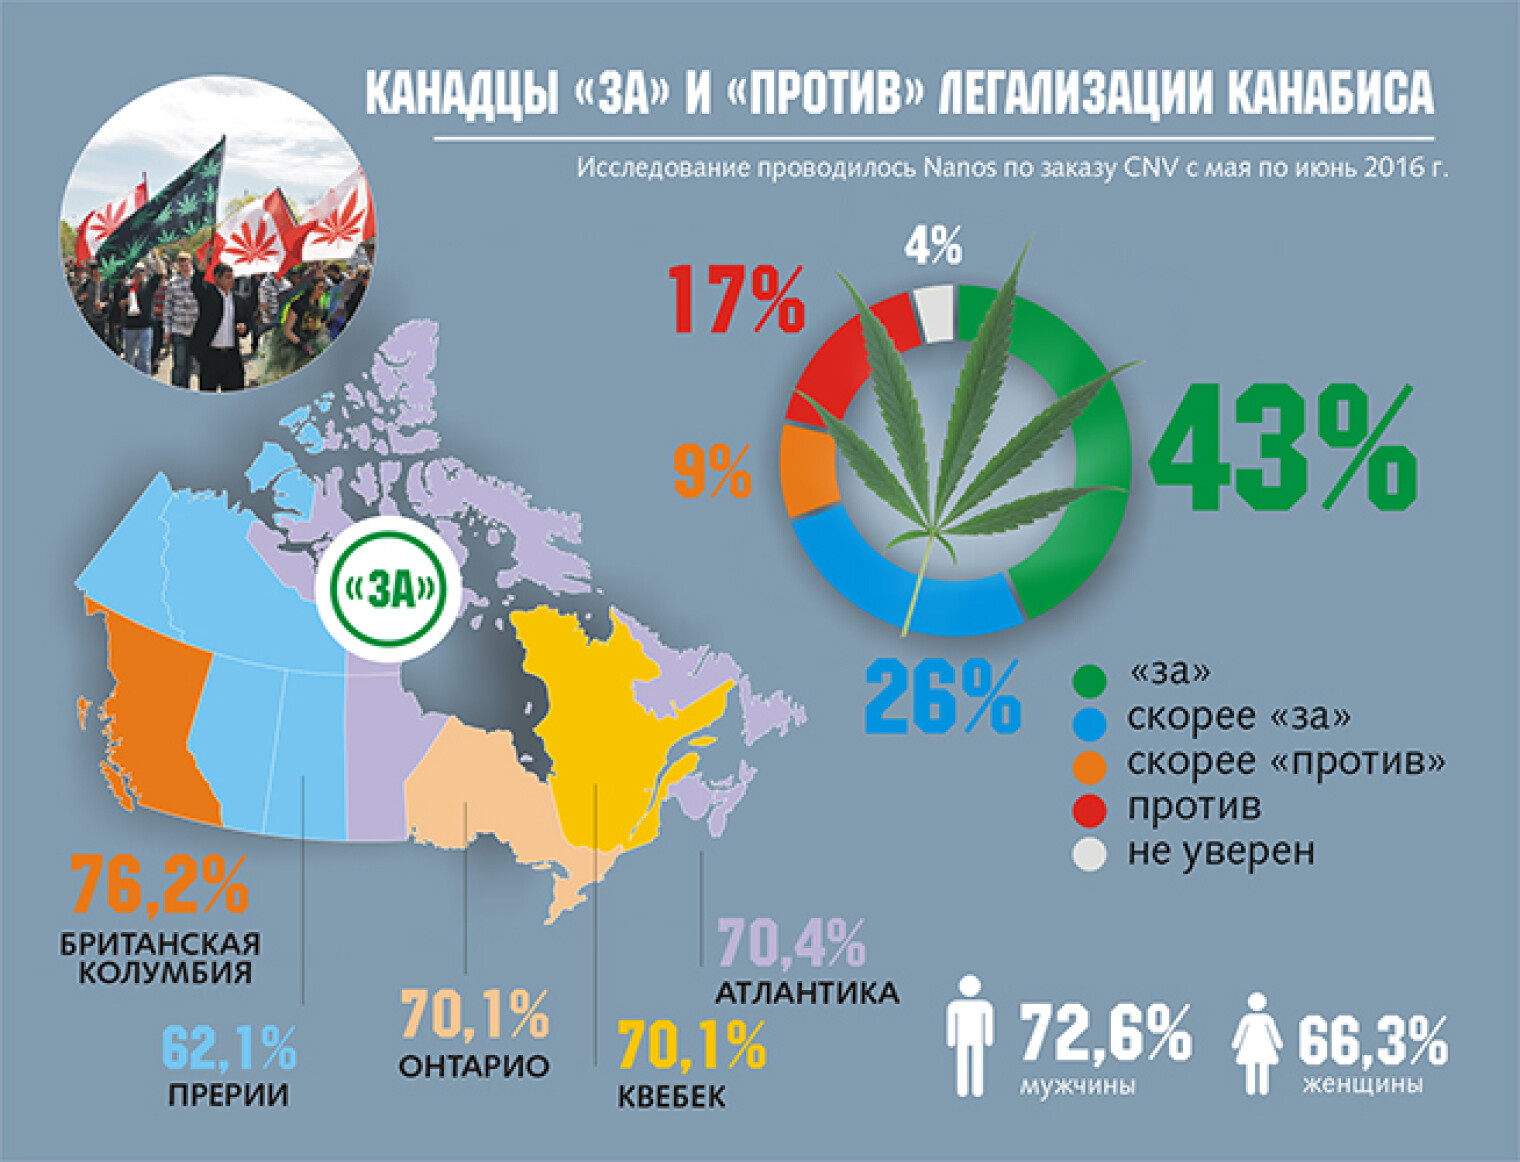 будет ли в россии легализация марихуаны